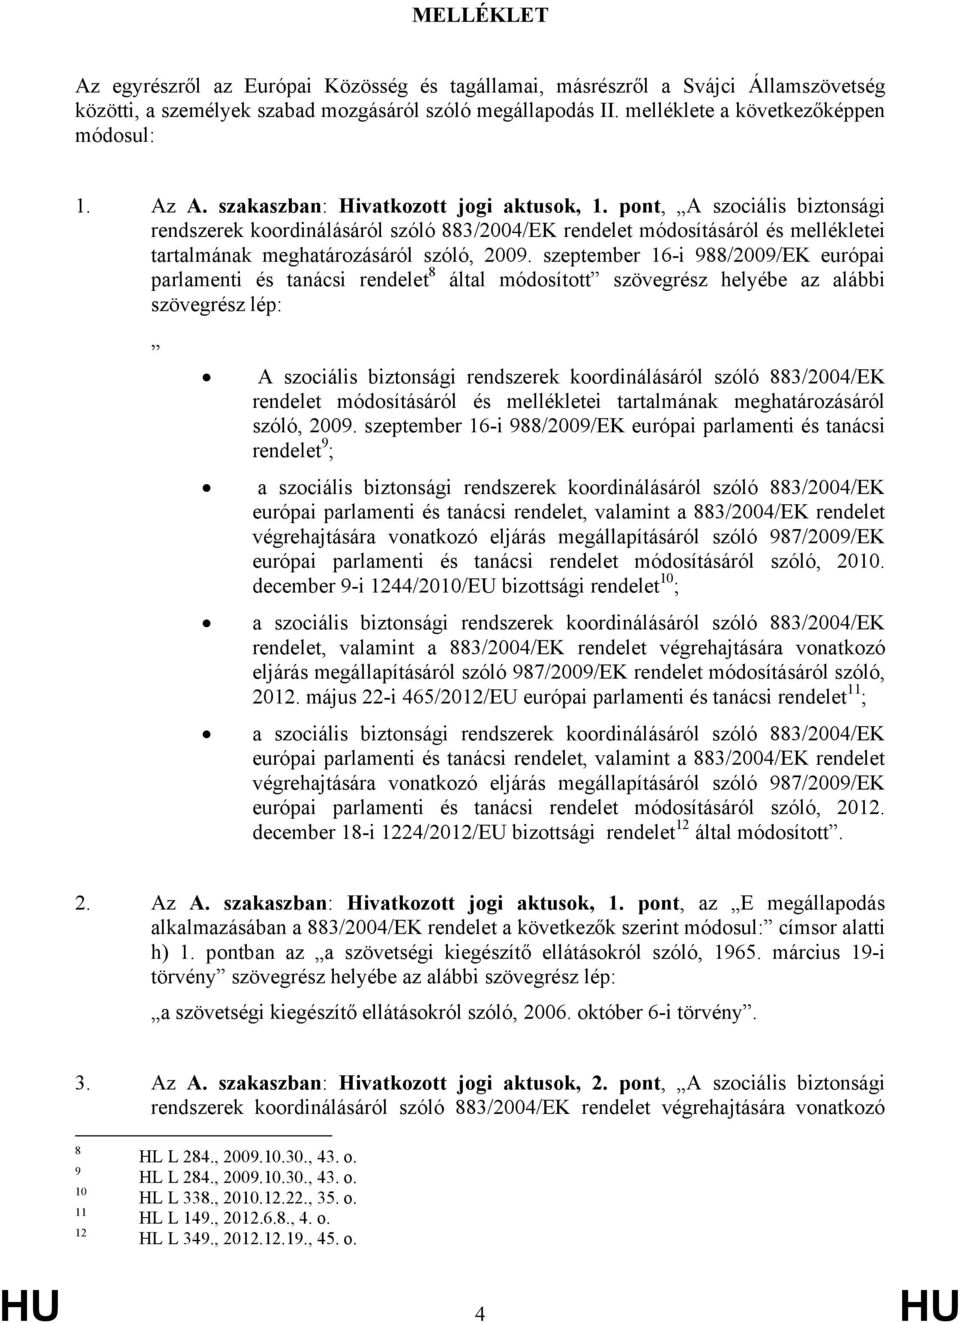 szeptember 16-i 988/2009/EK európai parlamenti és tanácsi rendelet 8 által módosított szövegrész helyébe az alábbi szövegrész lép: A szociális biztonsági rendszerek koordinálásáról szóló 883/2004/EK